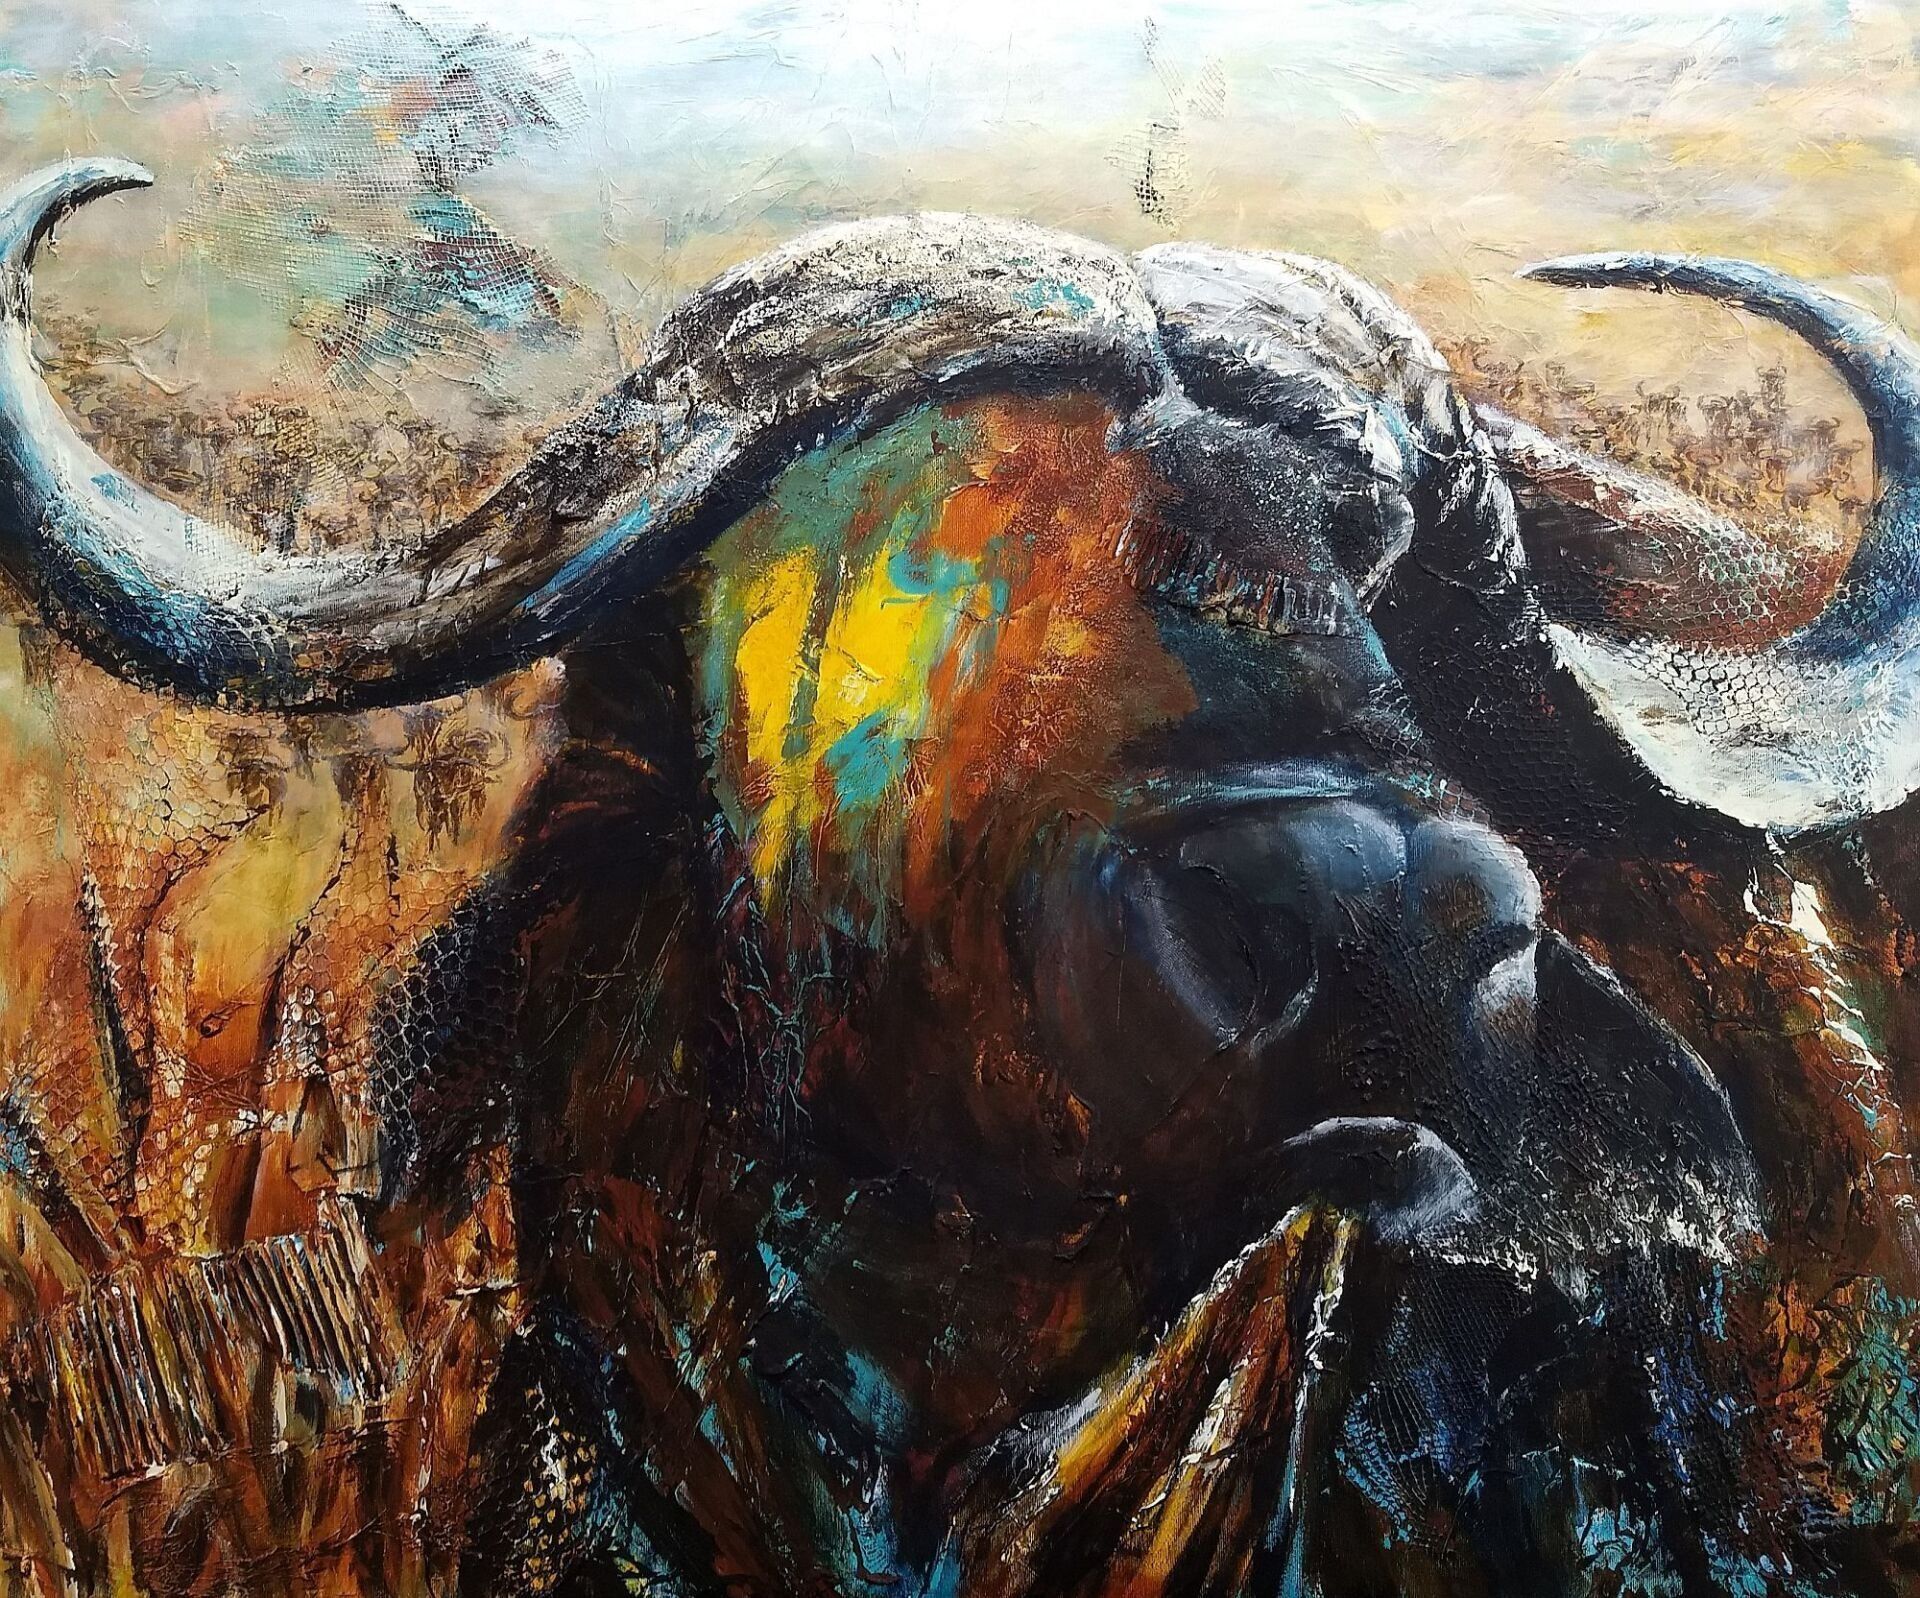 Portrait eines afrikanischen Büffels, bei dem eine Gesichtshälfte mit leuchtenden Farben übermalt ist